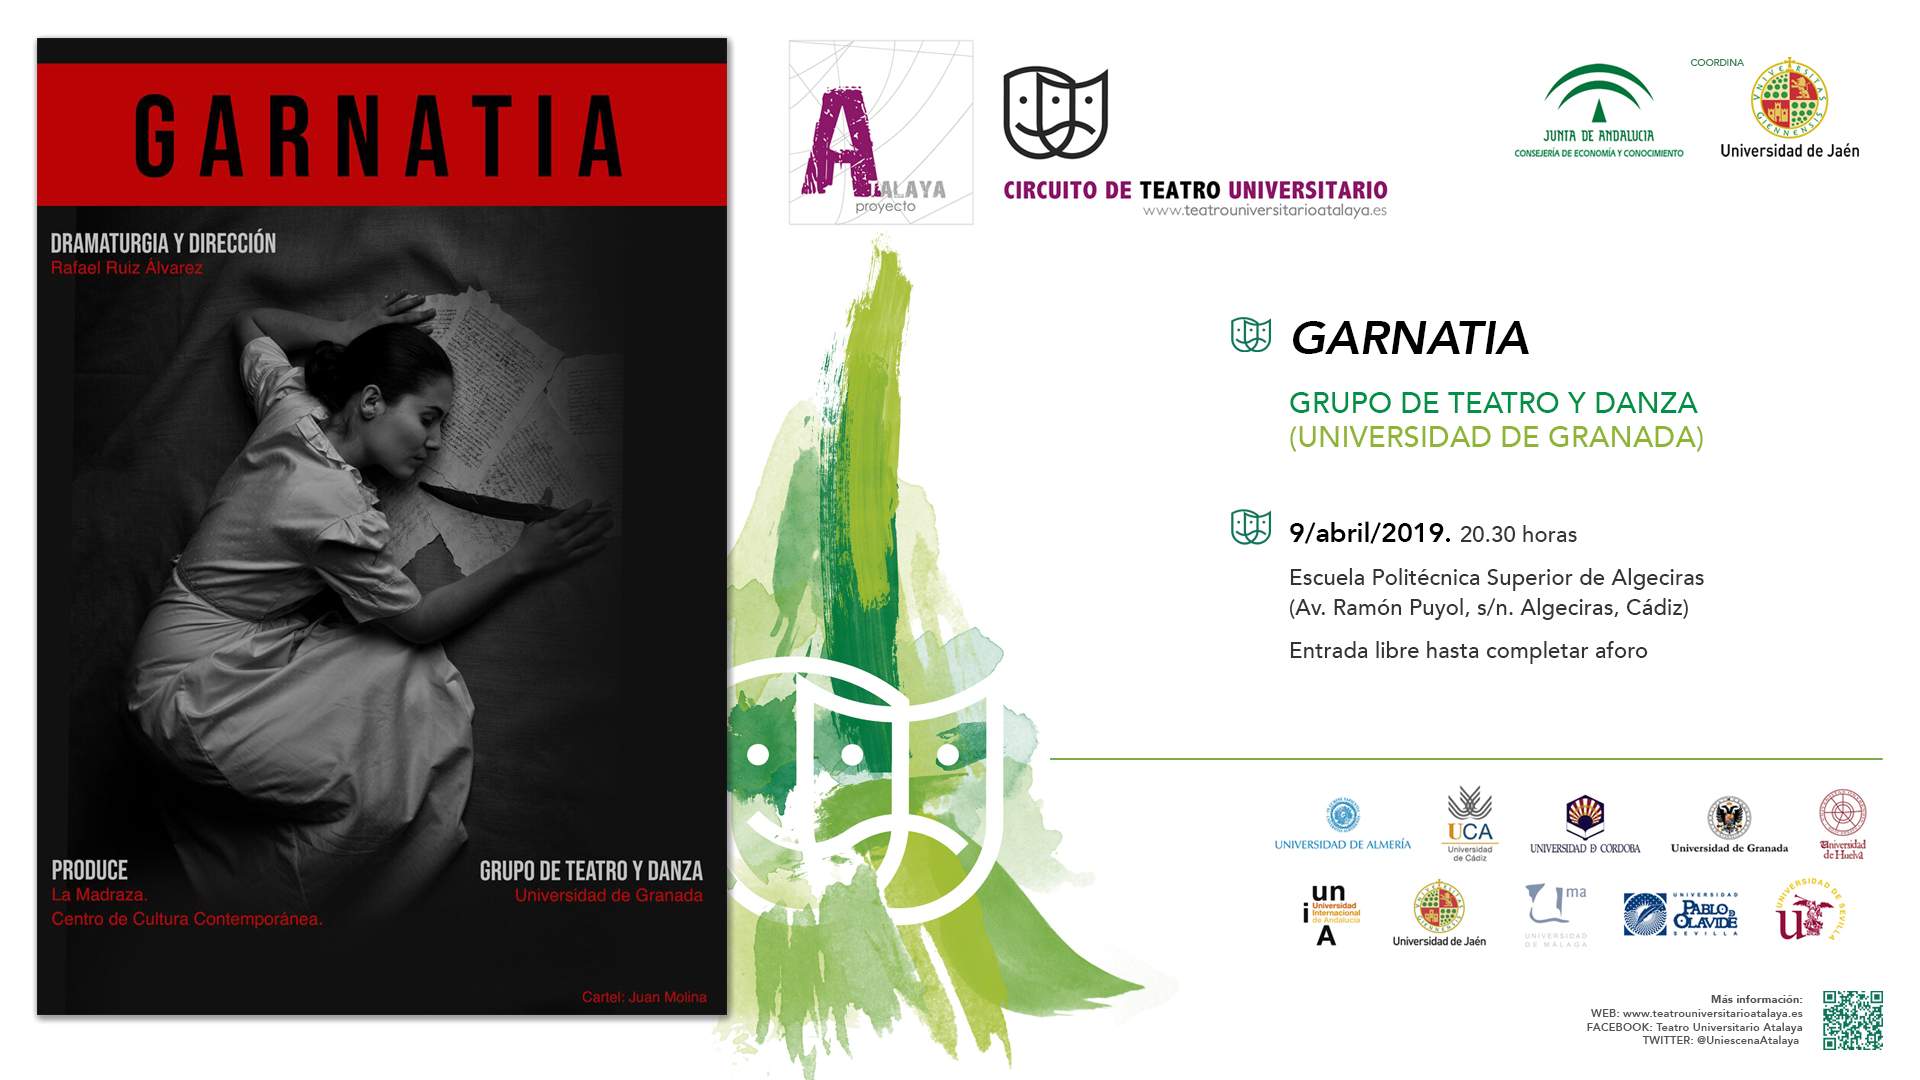 El Grupo de Teatro y Danza de la Universidad de Granada estrena “Garnatia” en la UCA